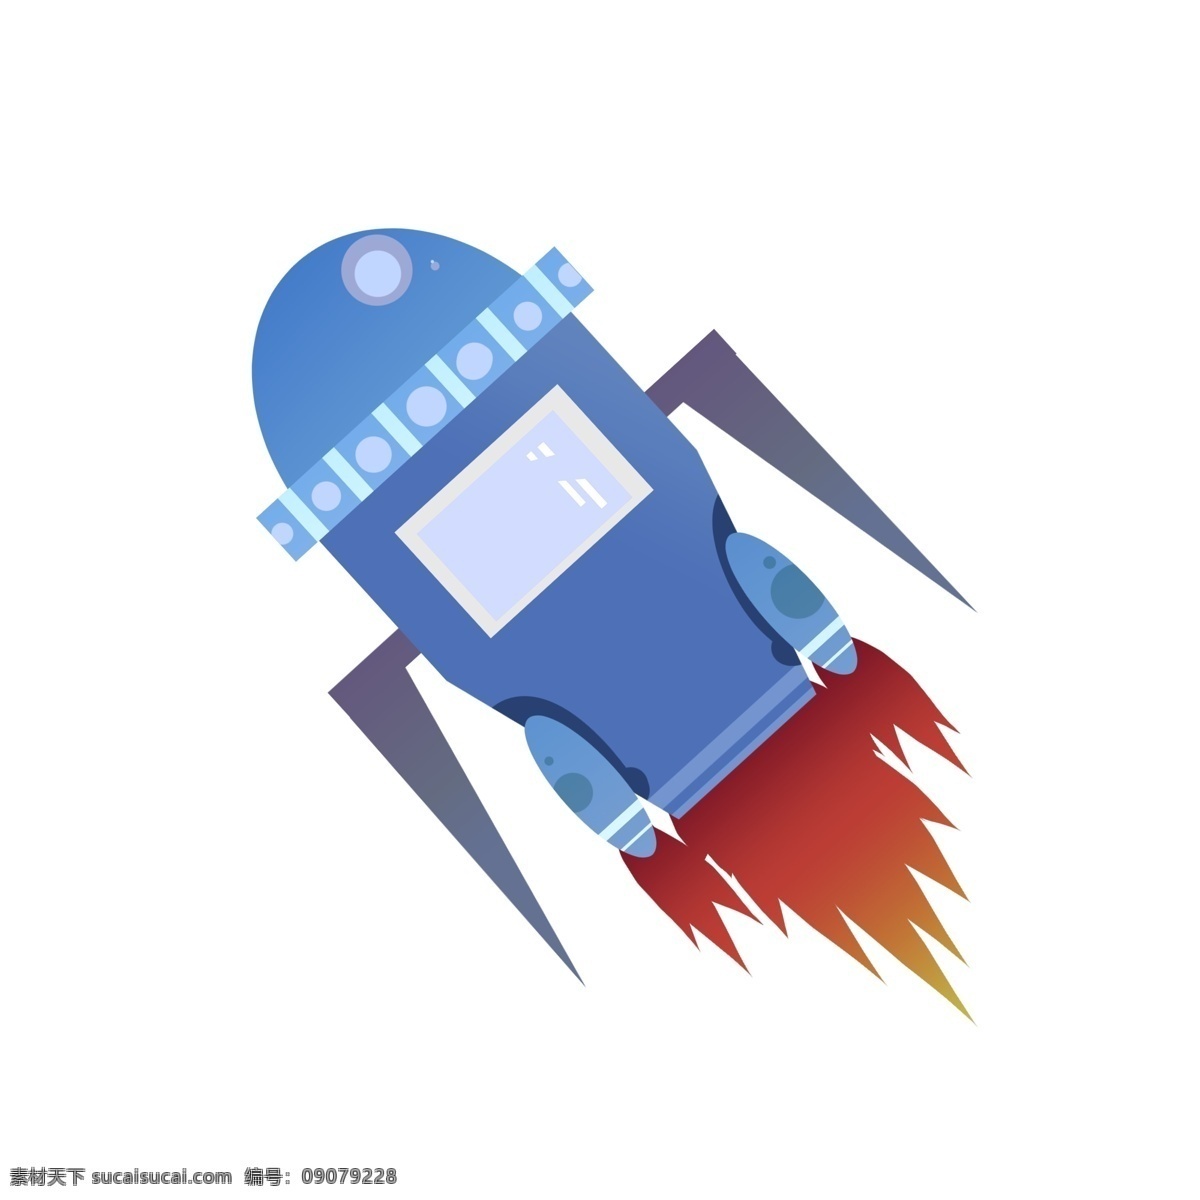 航空 日 火箭 装饰 插画 世界 蓝色的火箭 漂亮的火箭 创意火箭 立体火箭 卡通火箭 火箭插画